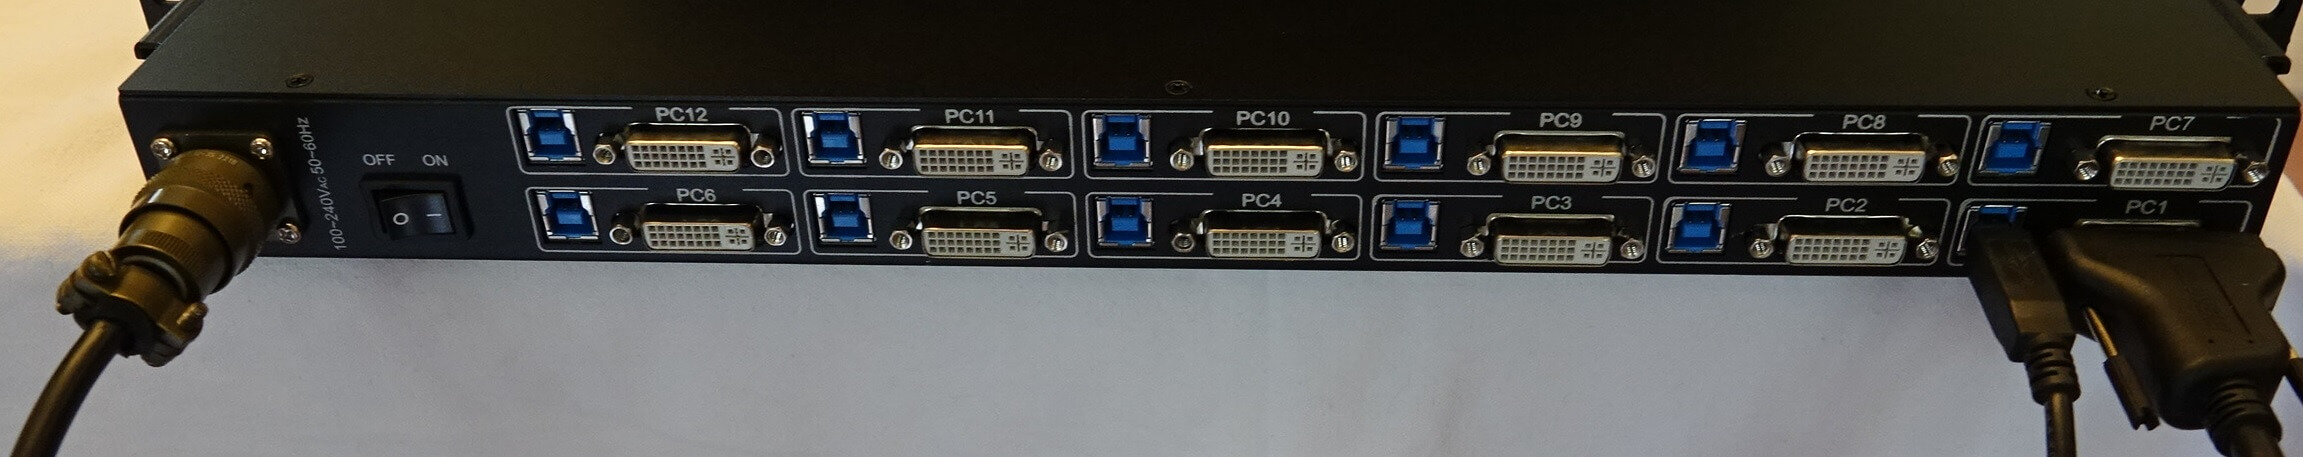 face arrière console kvm dkm 12 ports DVI MIL STD 810